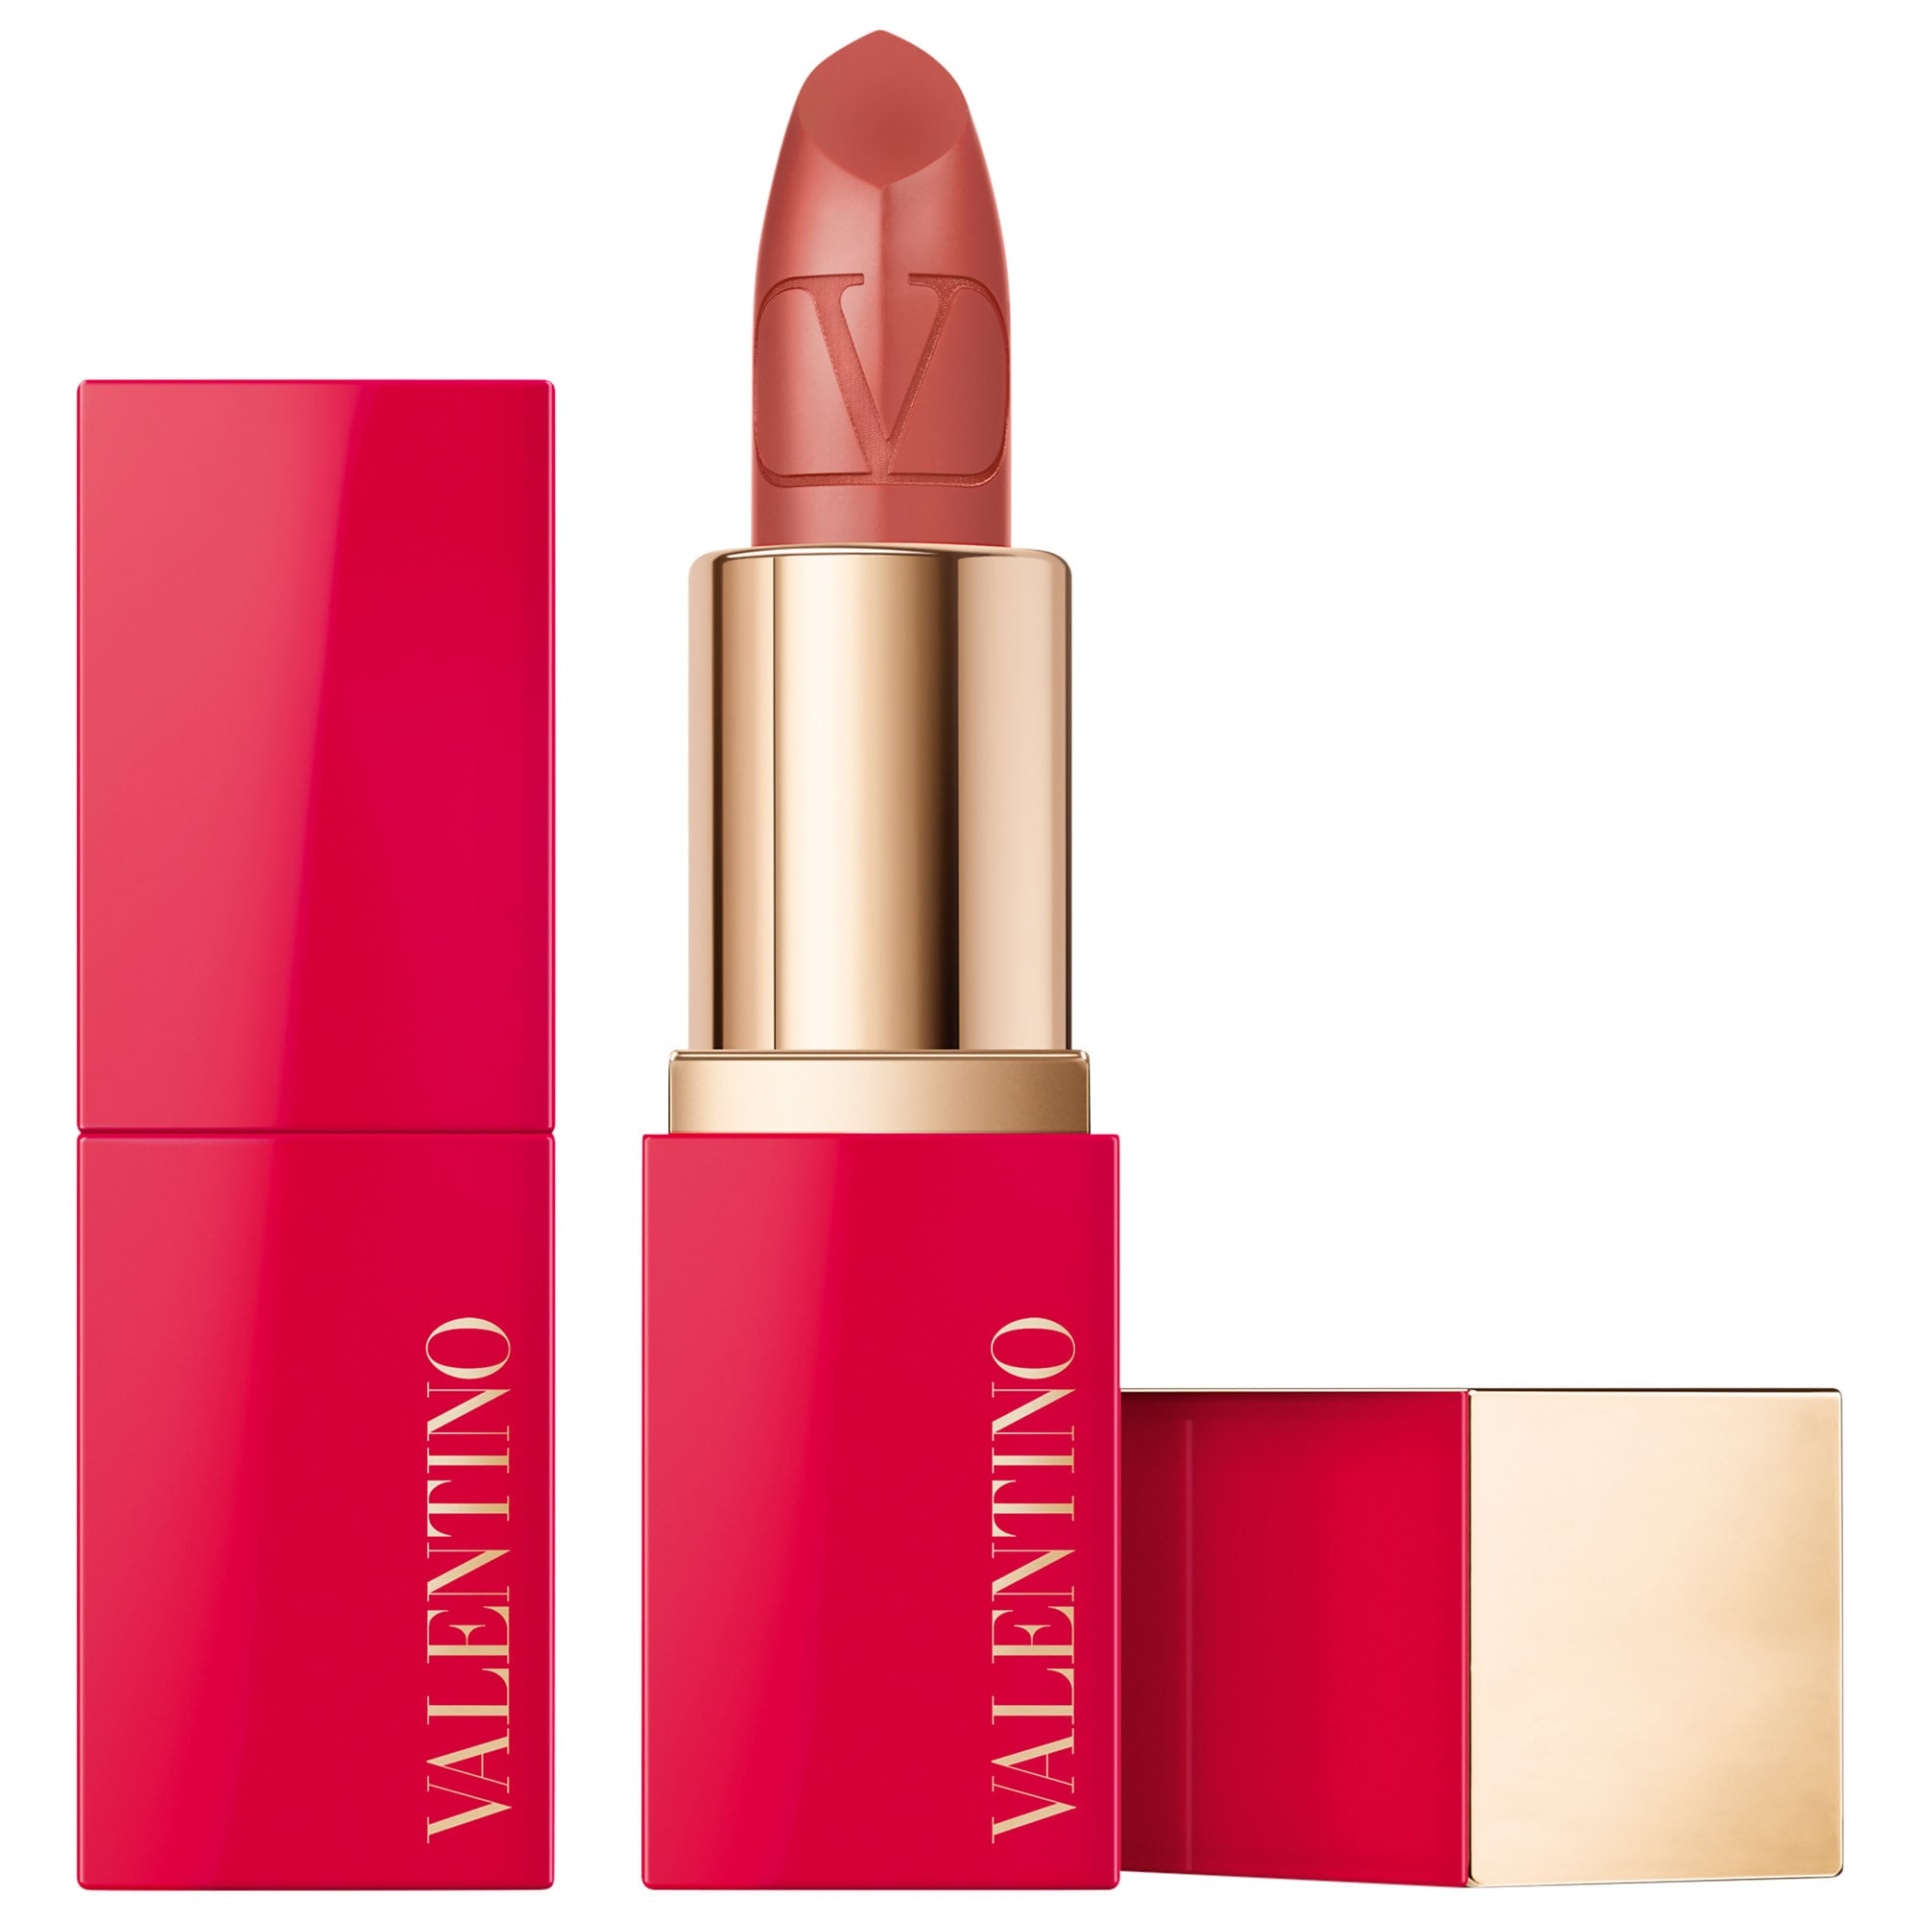 Mini Rosso Valentino Lipstick 100R Roman Grace 2 gram | Shipt